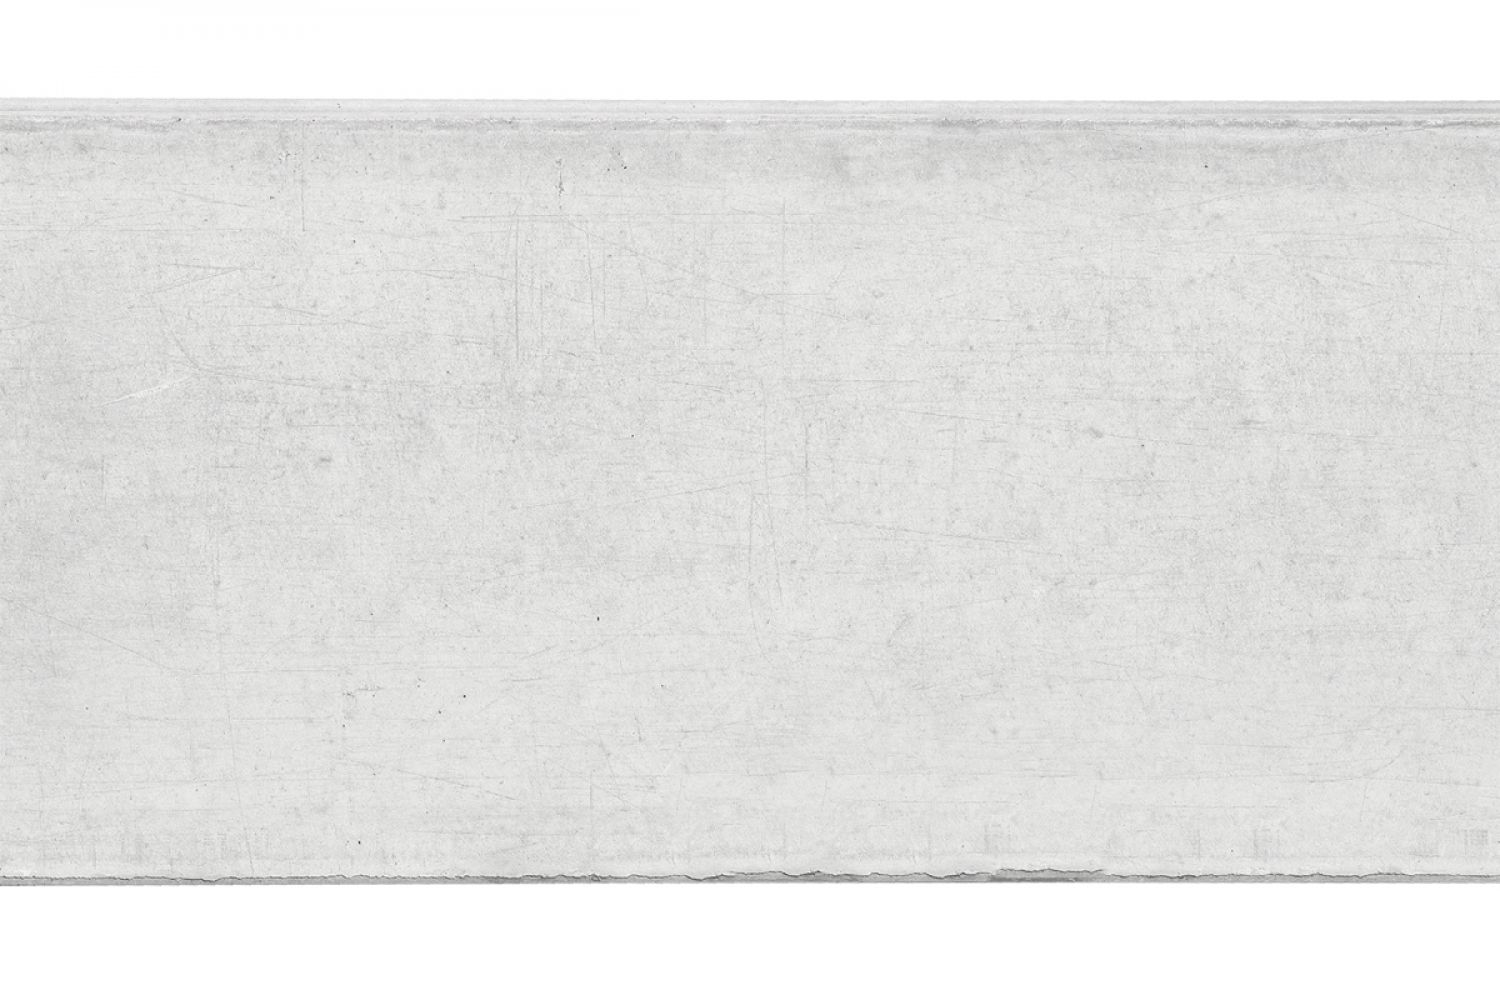 Betonnen onderplaat 2-zijdig houtmotief wit/grijs 4,8x36x180 cm